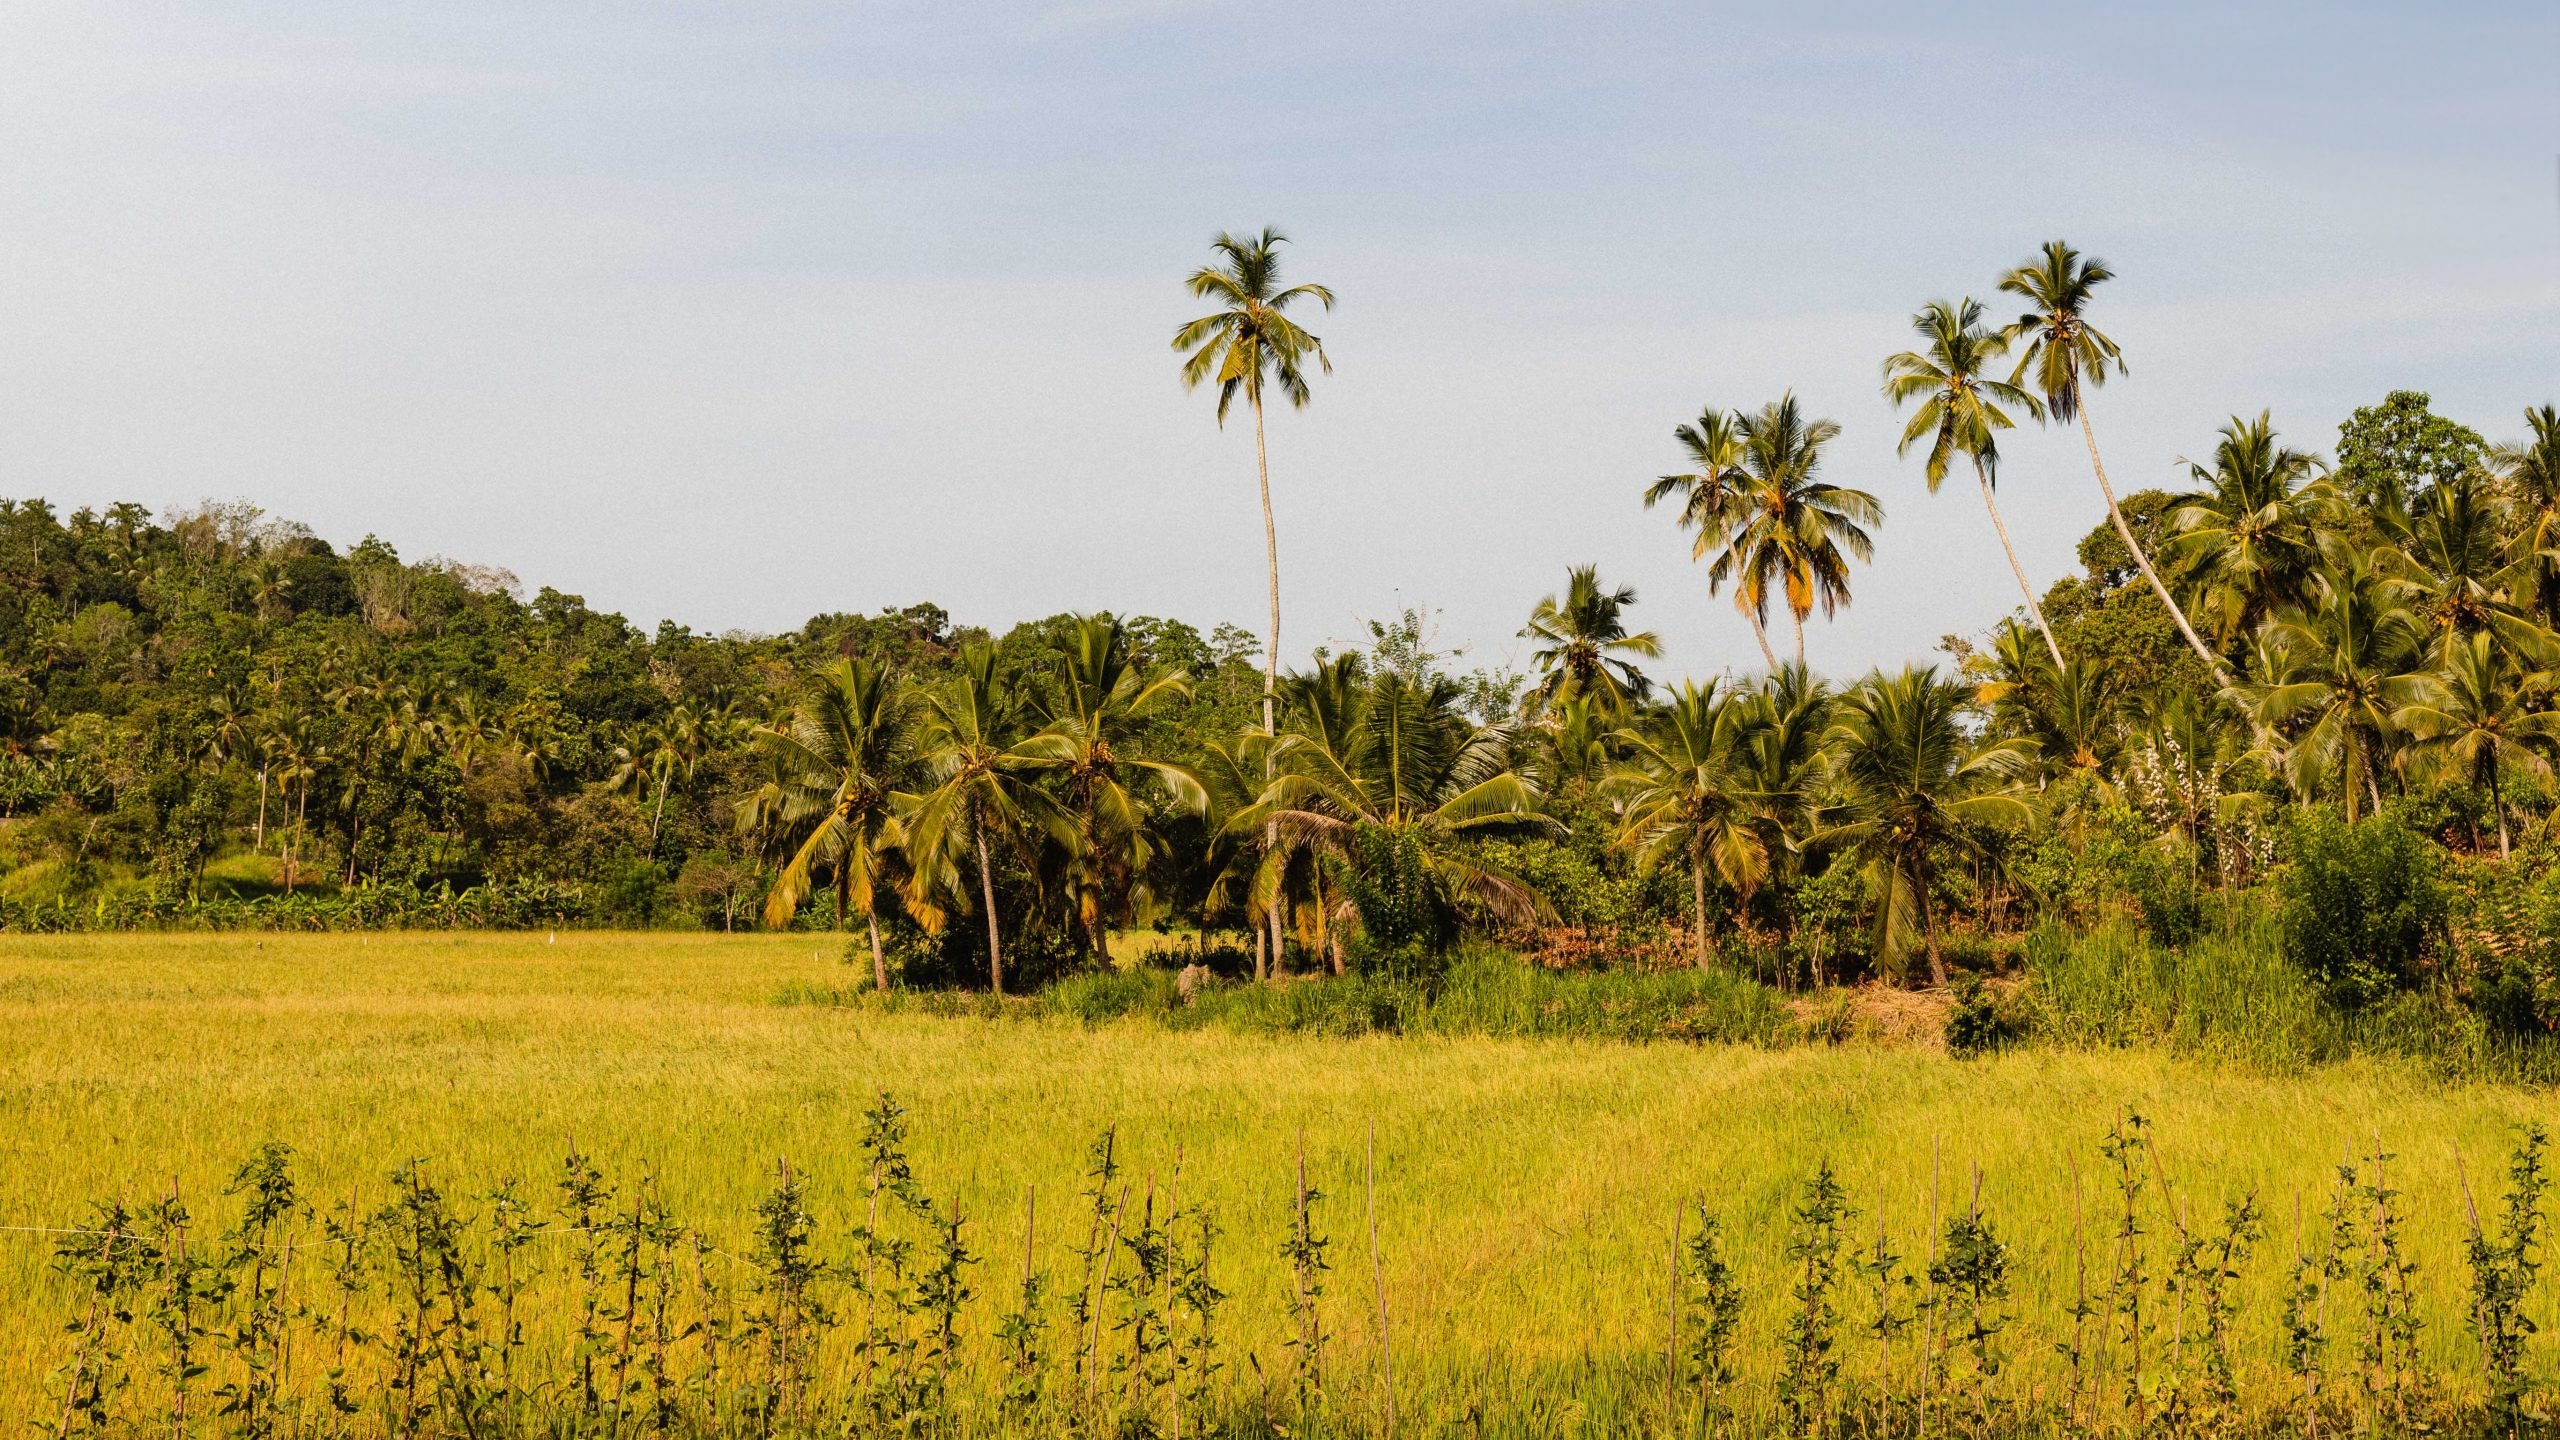 ANI Sri Lanka - Paddy Fields